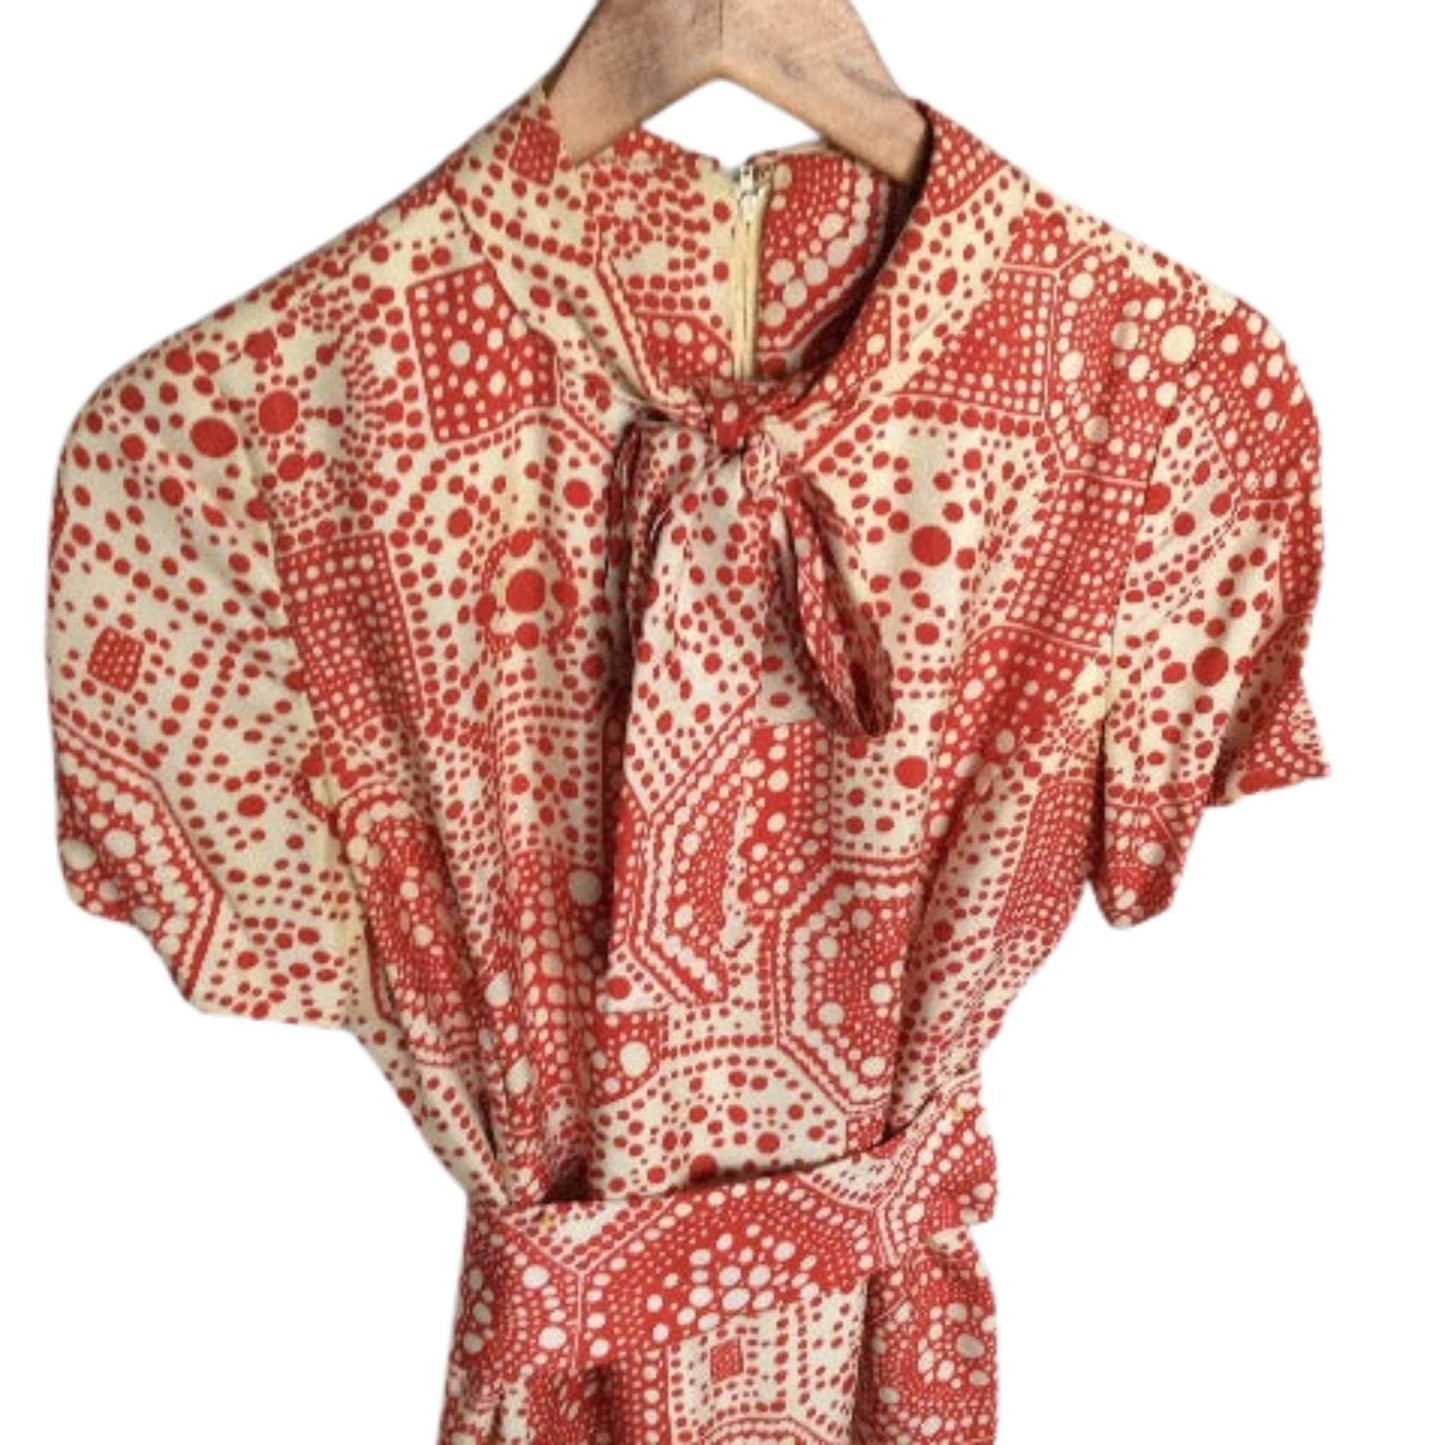 Abe Schrader Silk Dress Suit Medium / Multi / Vintage 1960s